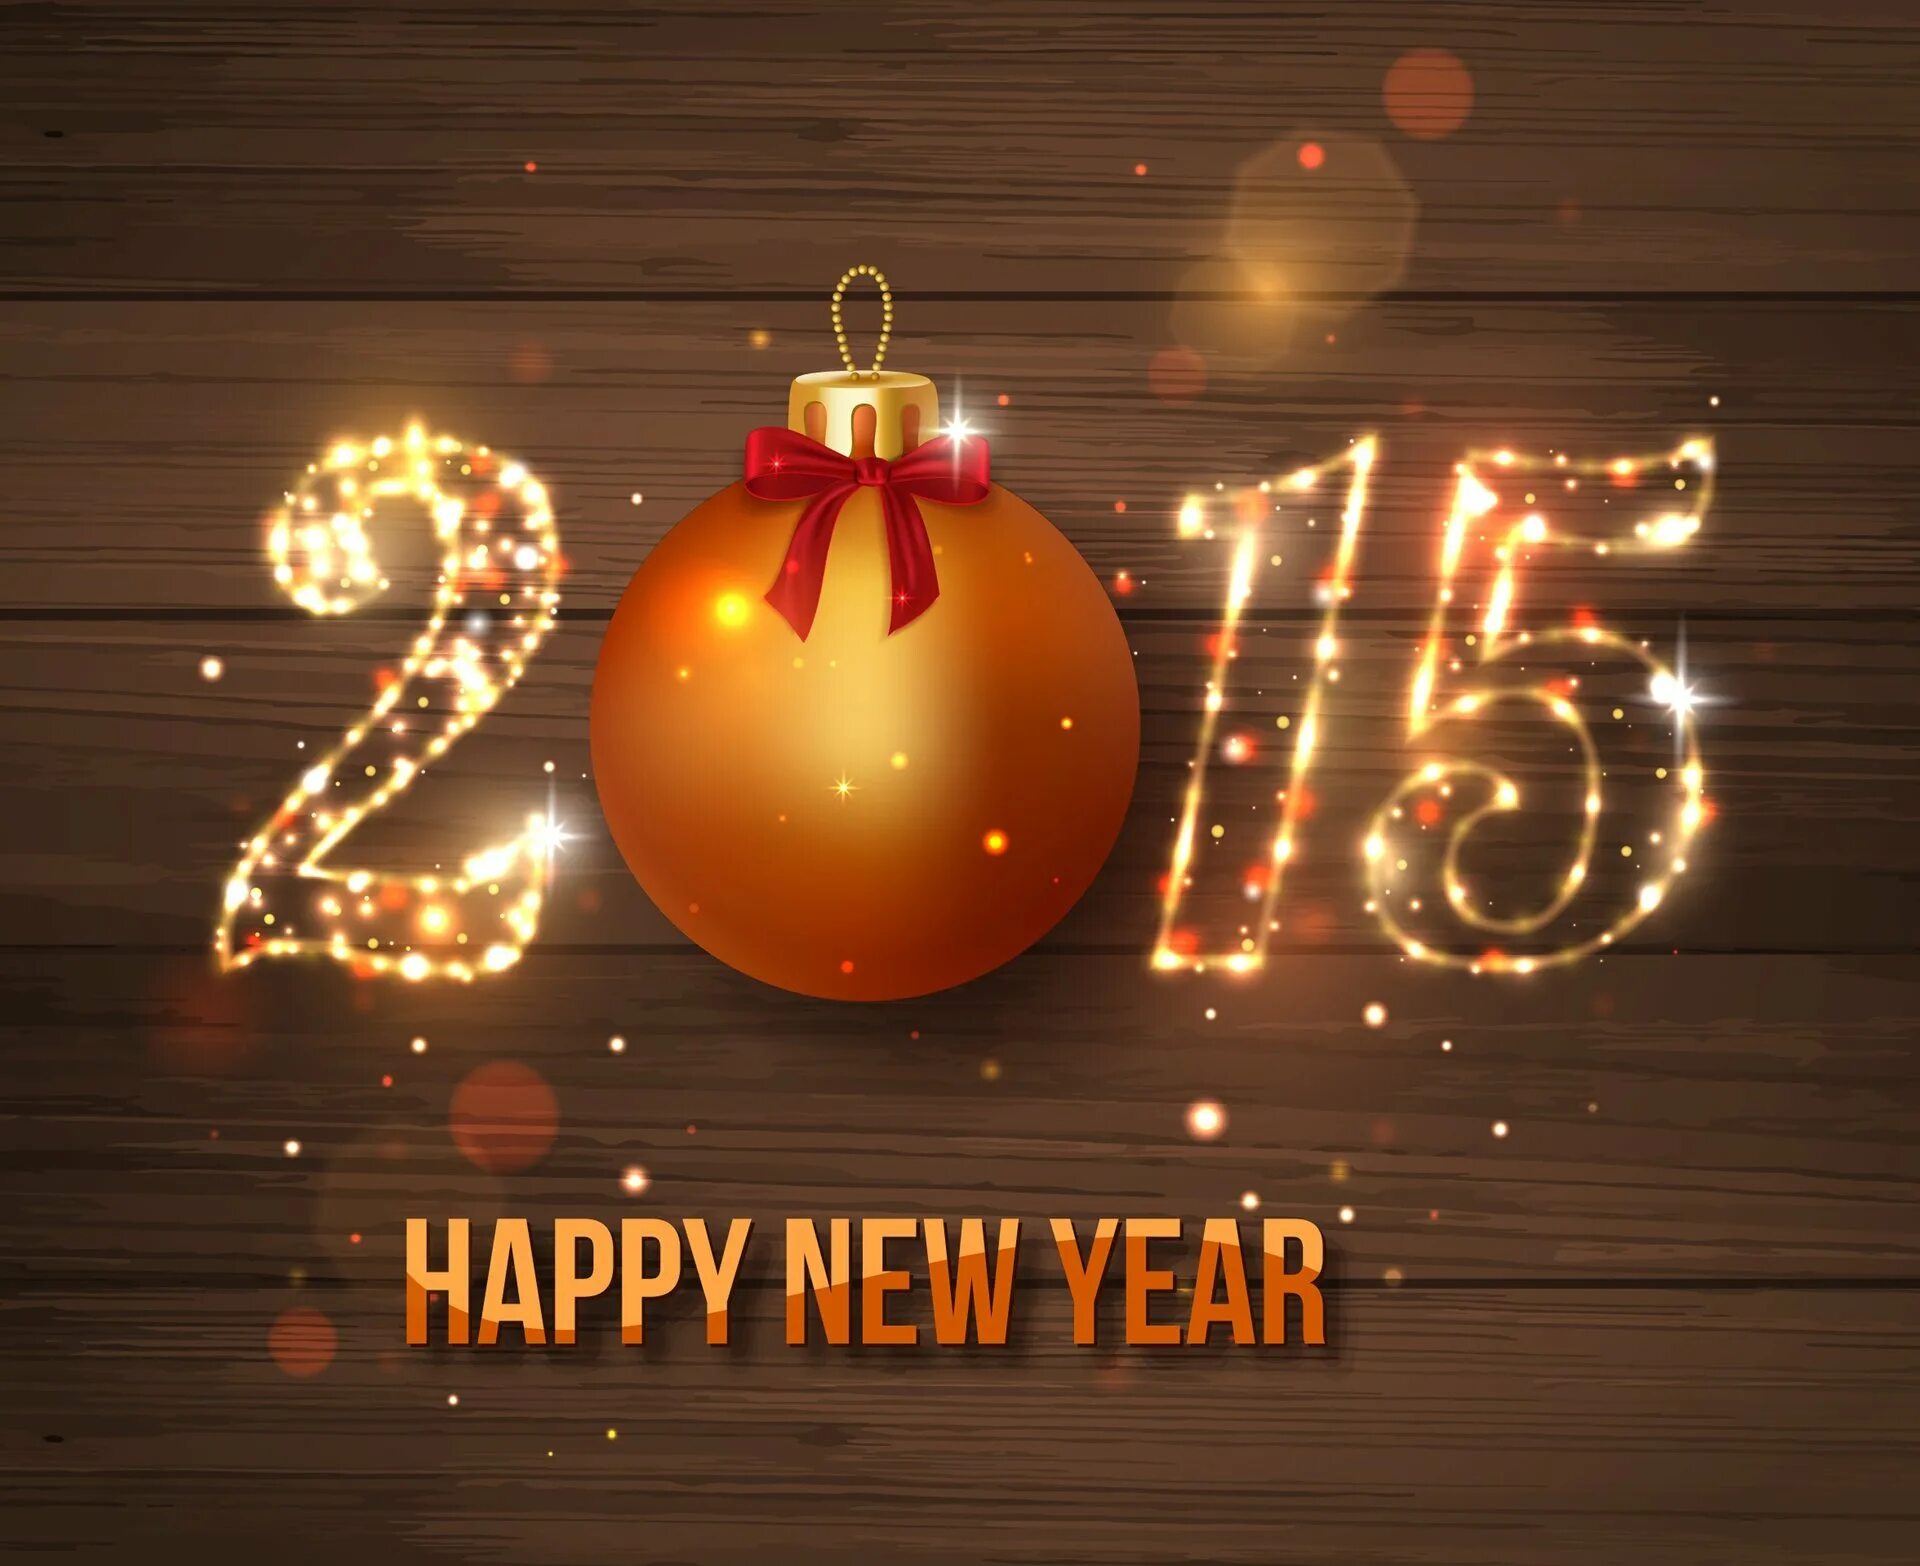 2015. Новый год 2015. Картинки с 2015 годом новогодние. Новый год 2015 картинки. Новогодняя заставка 2021 год.